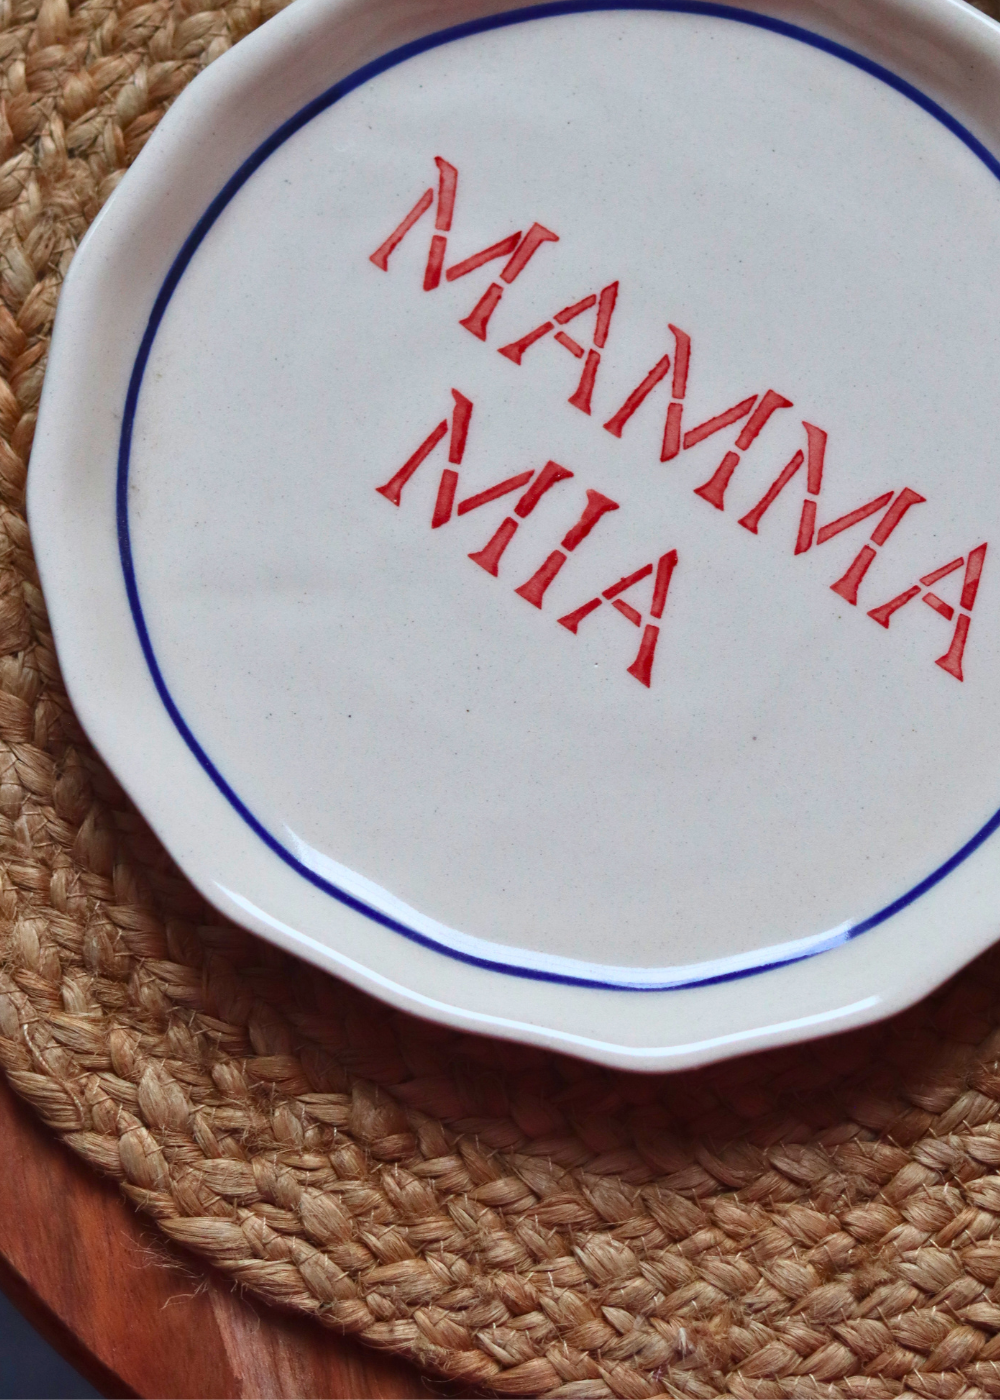 Mamma Mia Plate